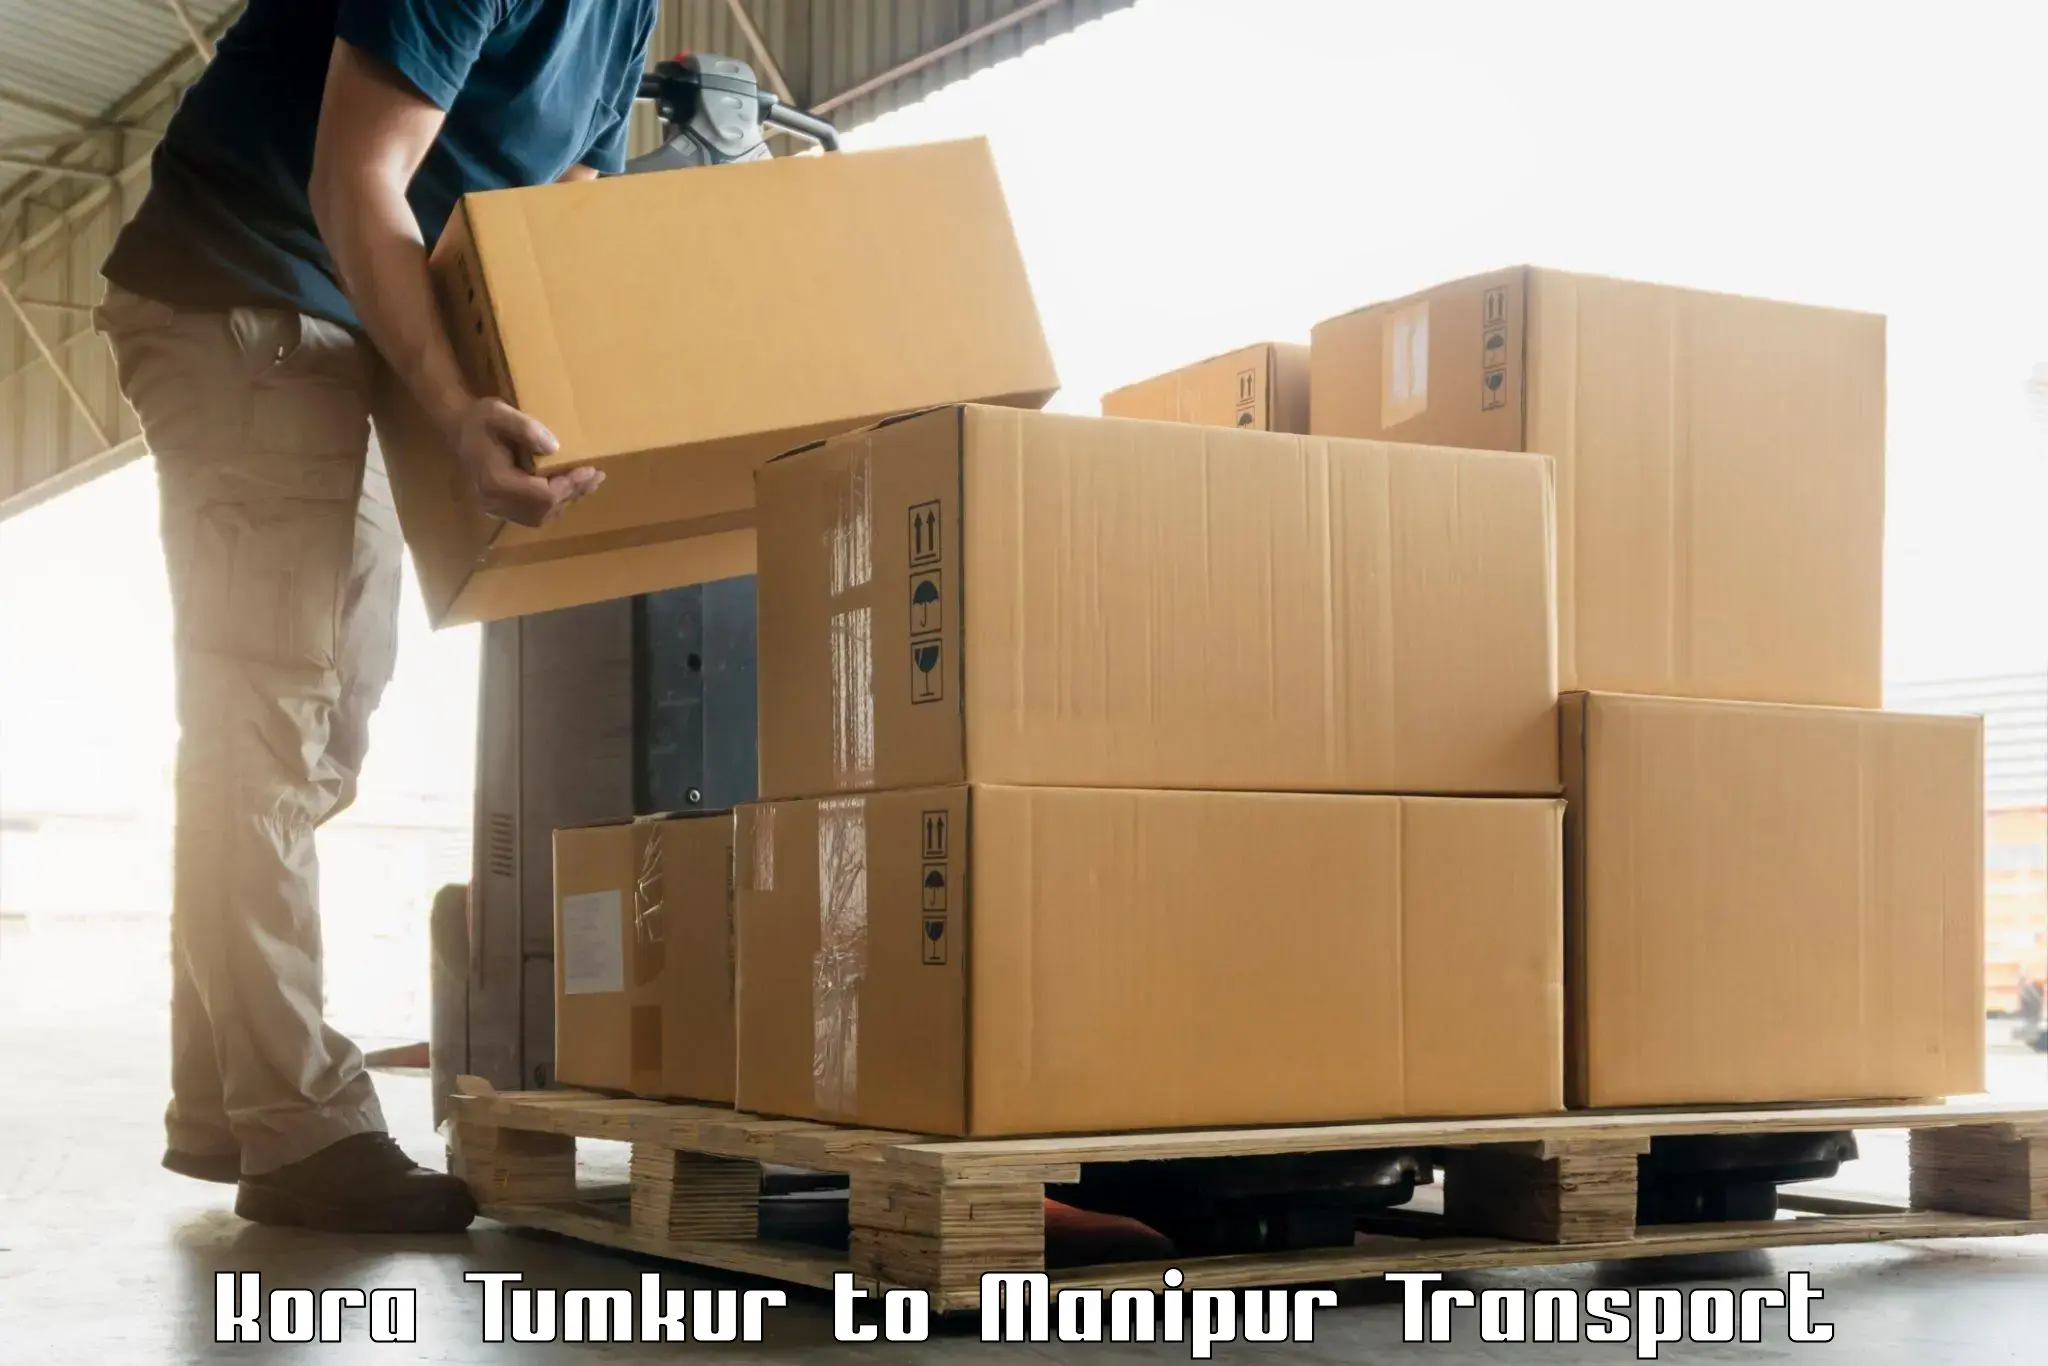 Logistics transportation services Kora Tumkur to Moirang